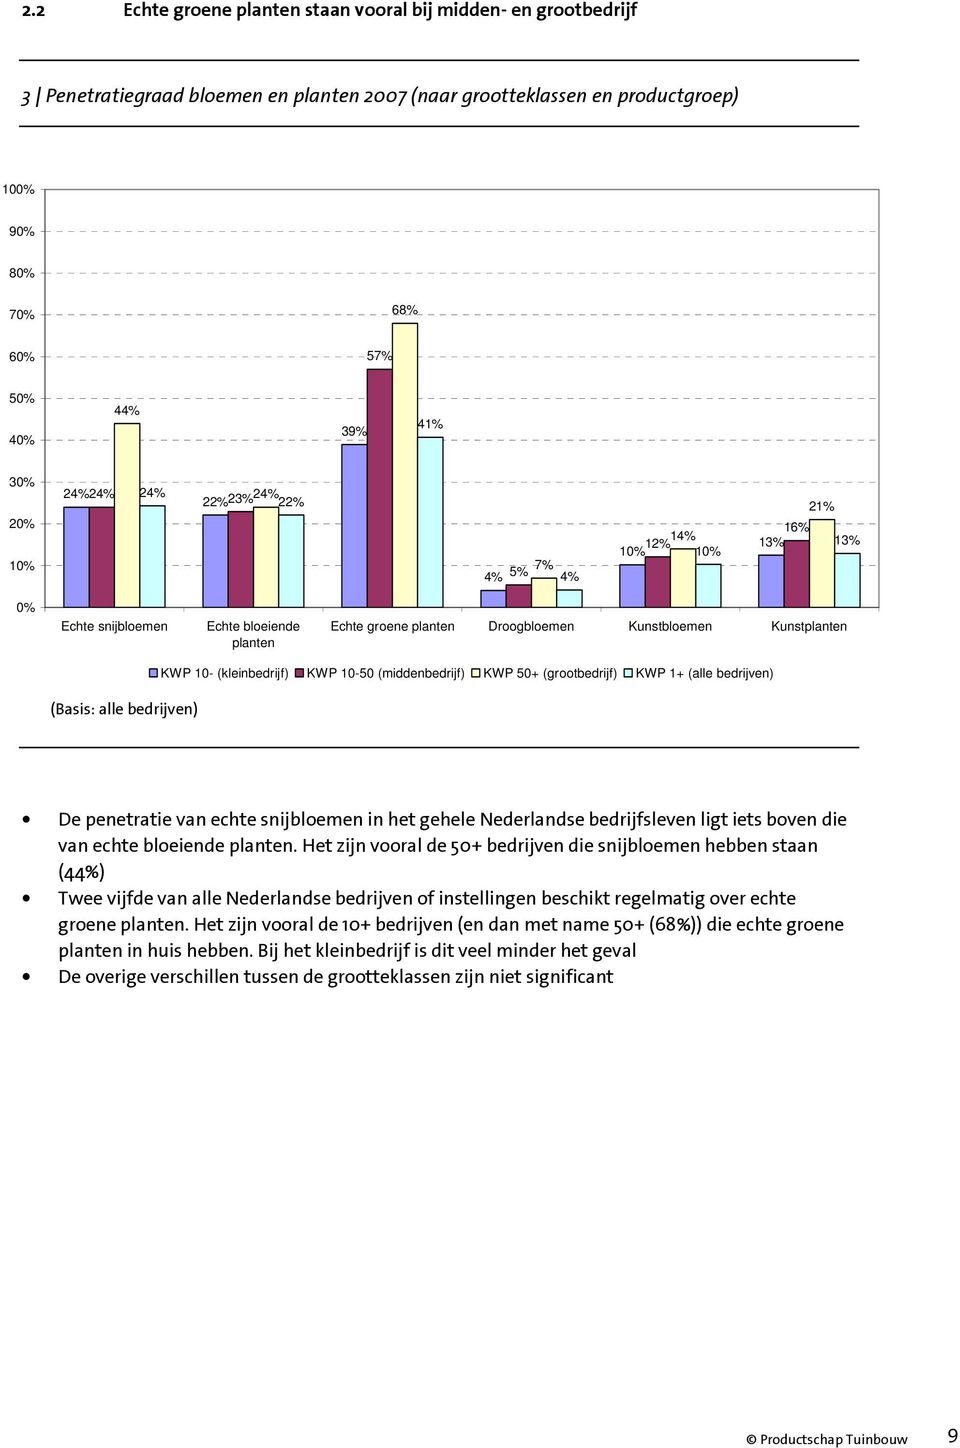 bedrijven) KWP 10- (kleinbedrijf) KWP 10-50 (middenbedrijf) KWP 50+ (grootbedrijf) KWP 1+ (alle bedrijven) De penetratie van echte snijbloemen in het gehele Nederlandse bedrijfsleven ligt iets boven